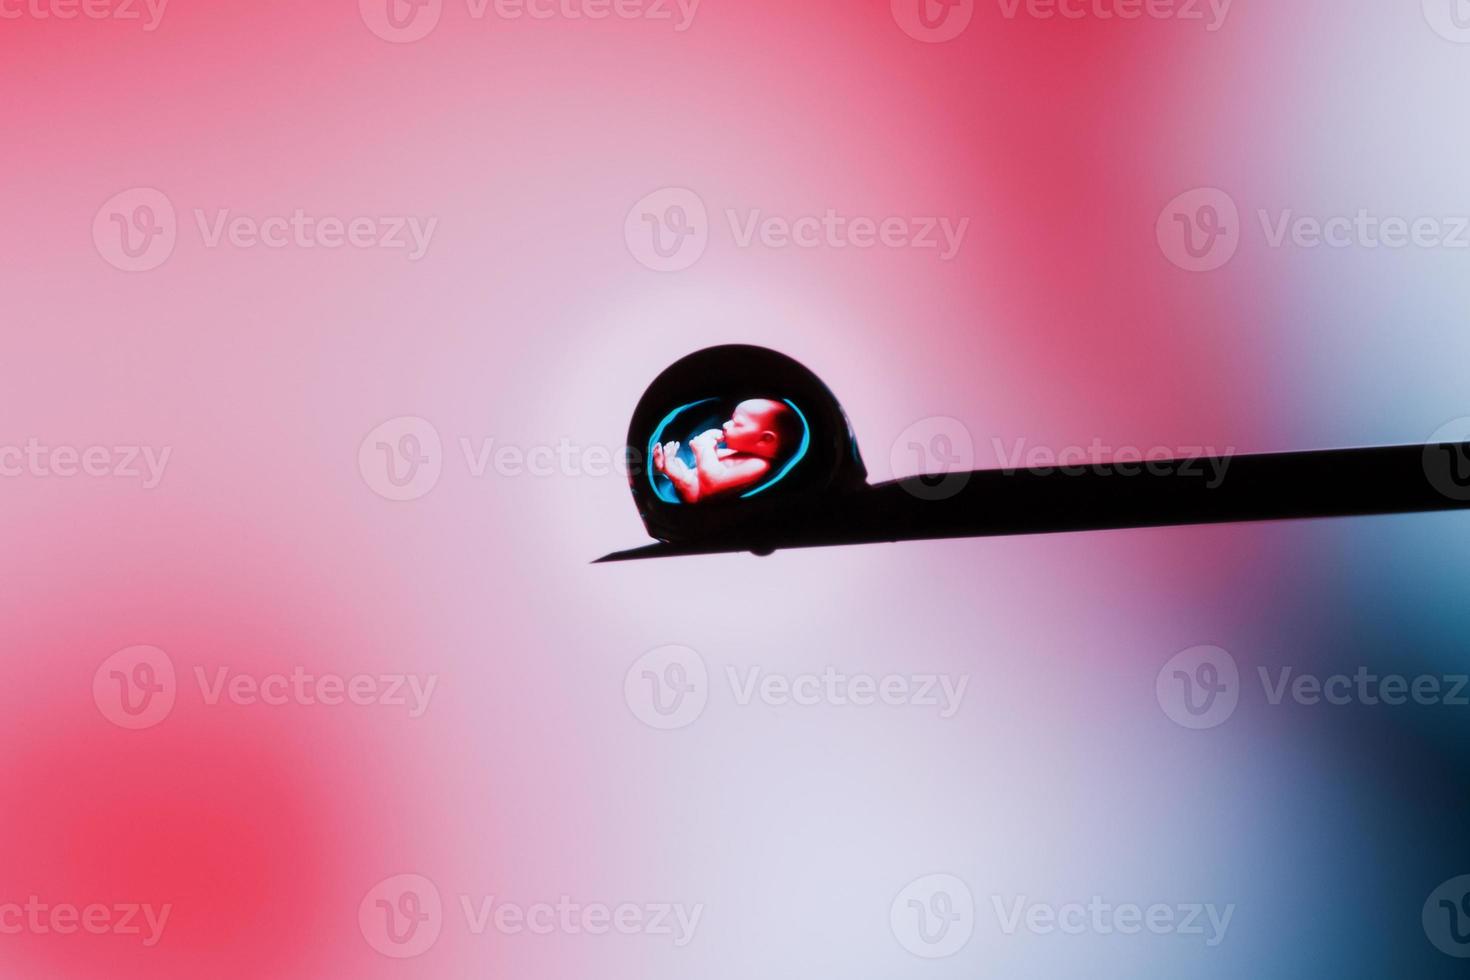 embrião humano em uma gota na ponta de uma agulha em um fundo rosa. editorial ilustrativo foto